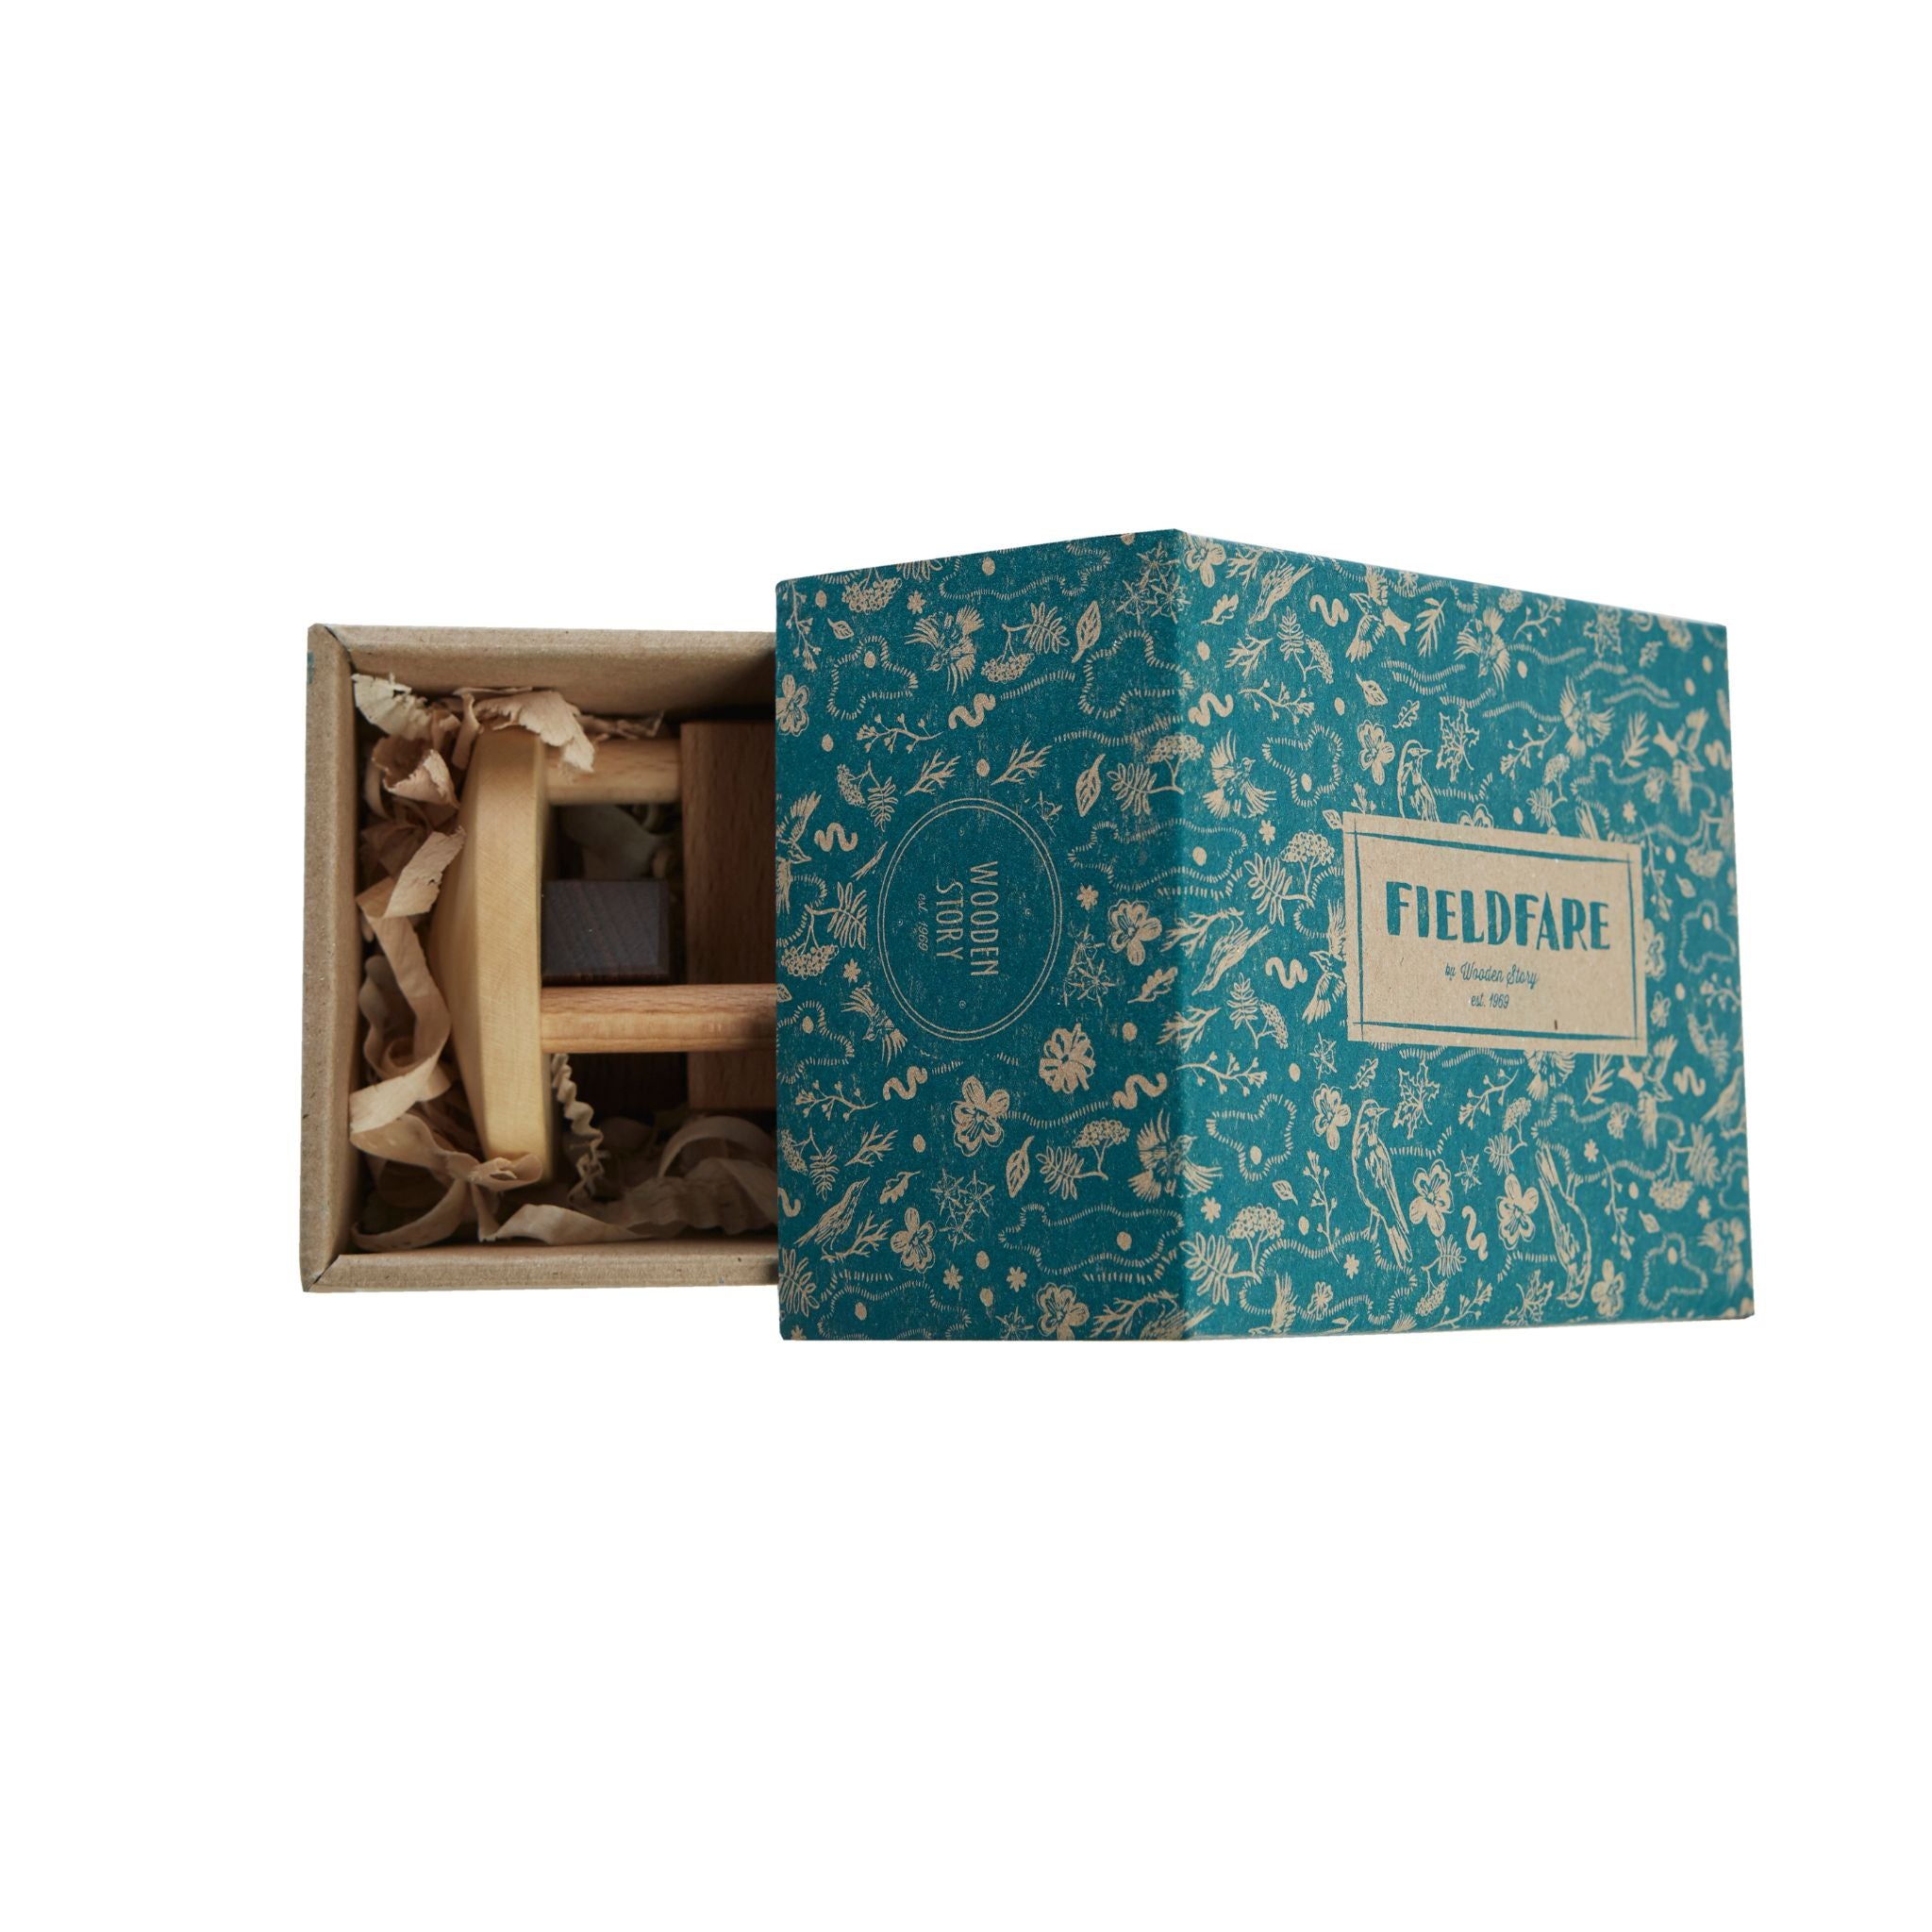 Wooden Story Fieldfare Rattle - Showing Open Box